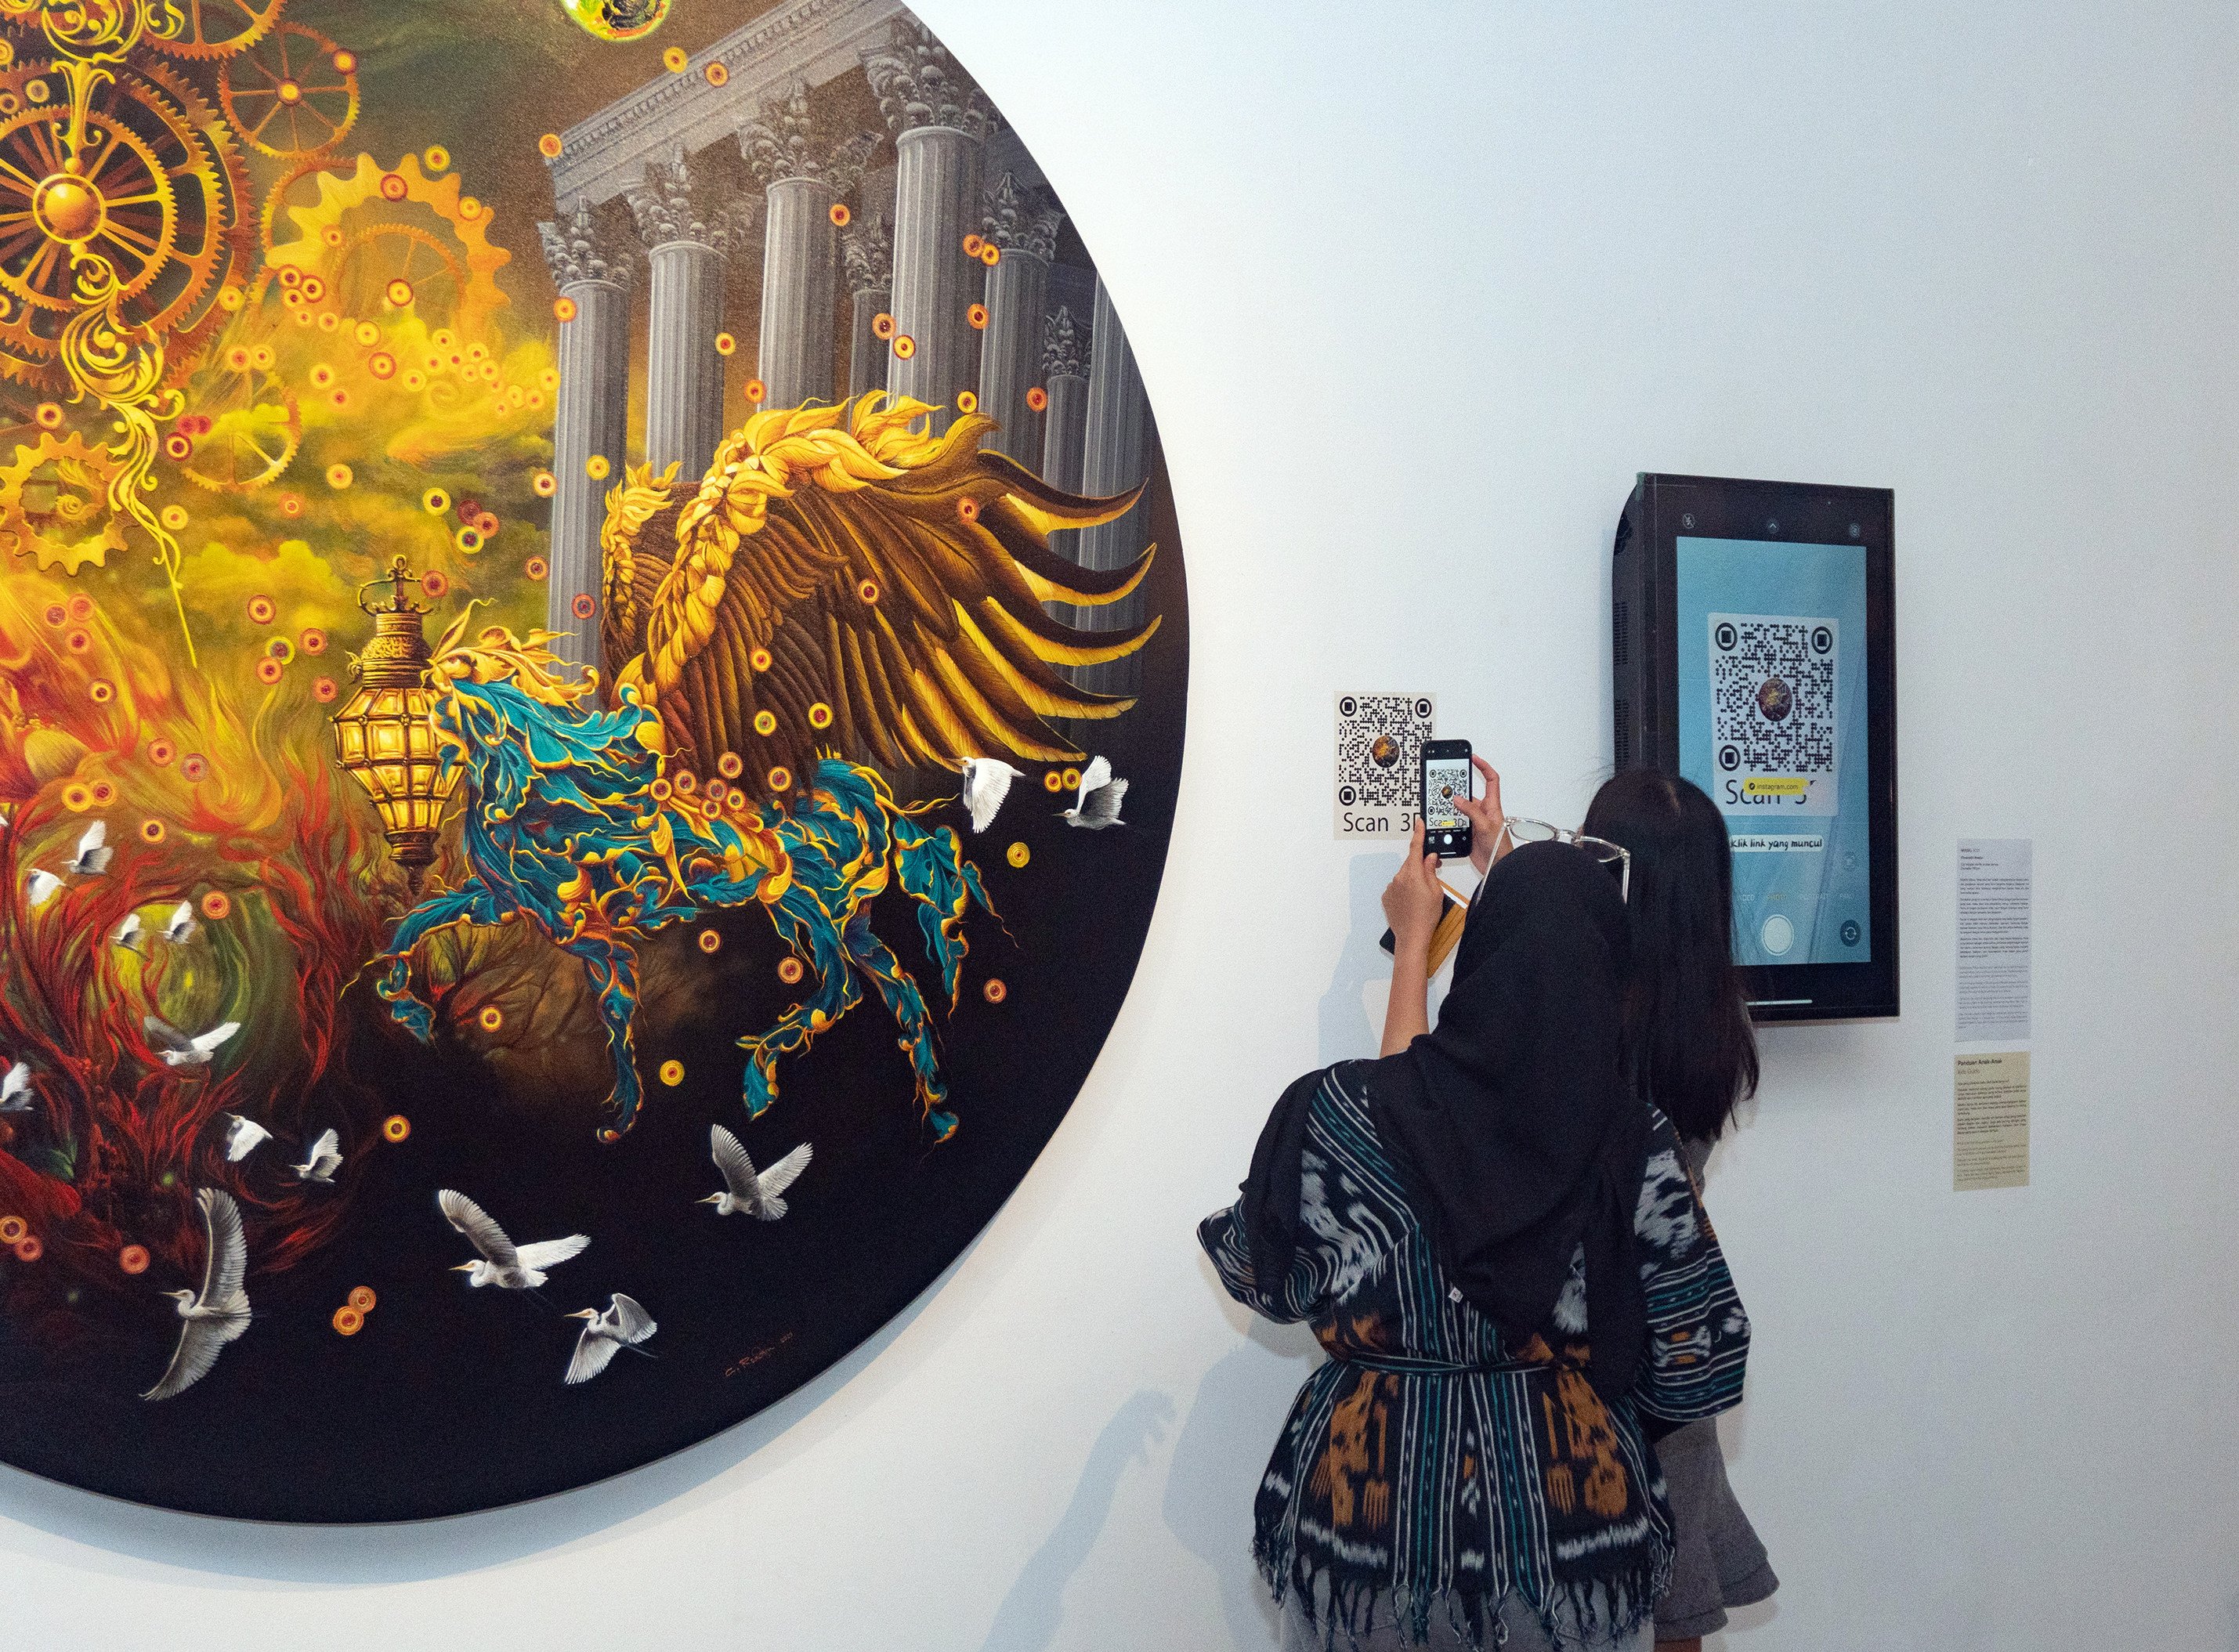 Visitors admiring artworks at the 2023 Biennale Jatim in Indonesia. Photo: Orasis Art Space 